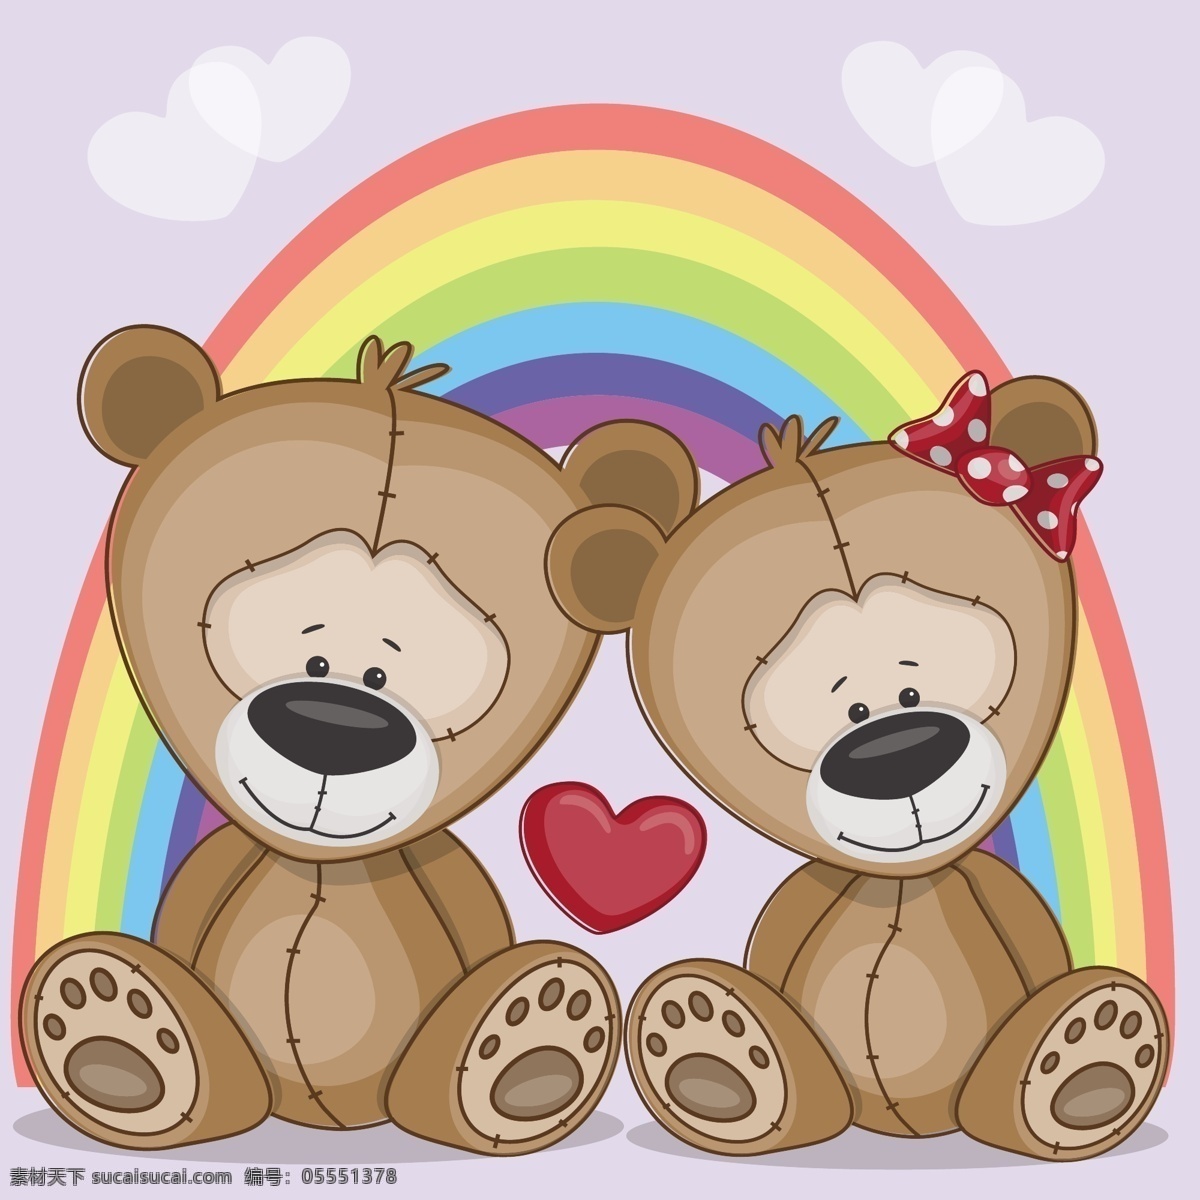 手绘 卡通 彩虹 下 两 只 小 熊 彩虹下 两只小熊